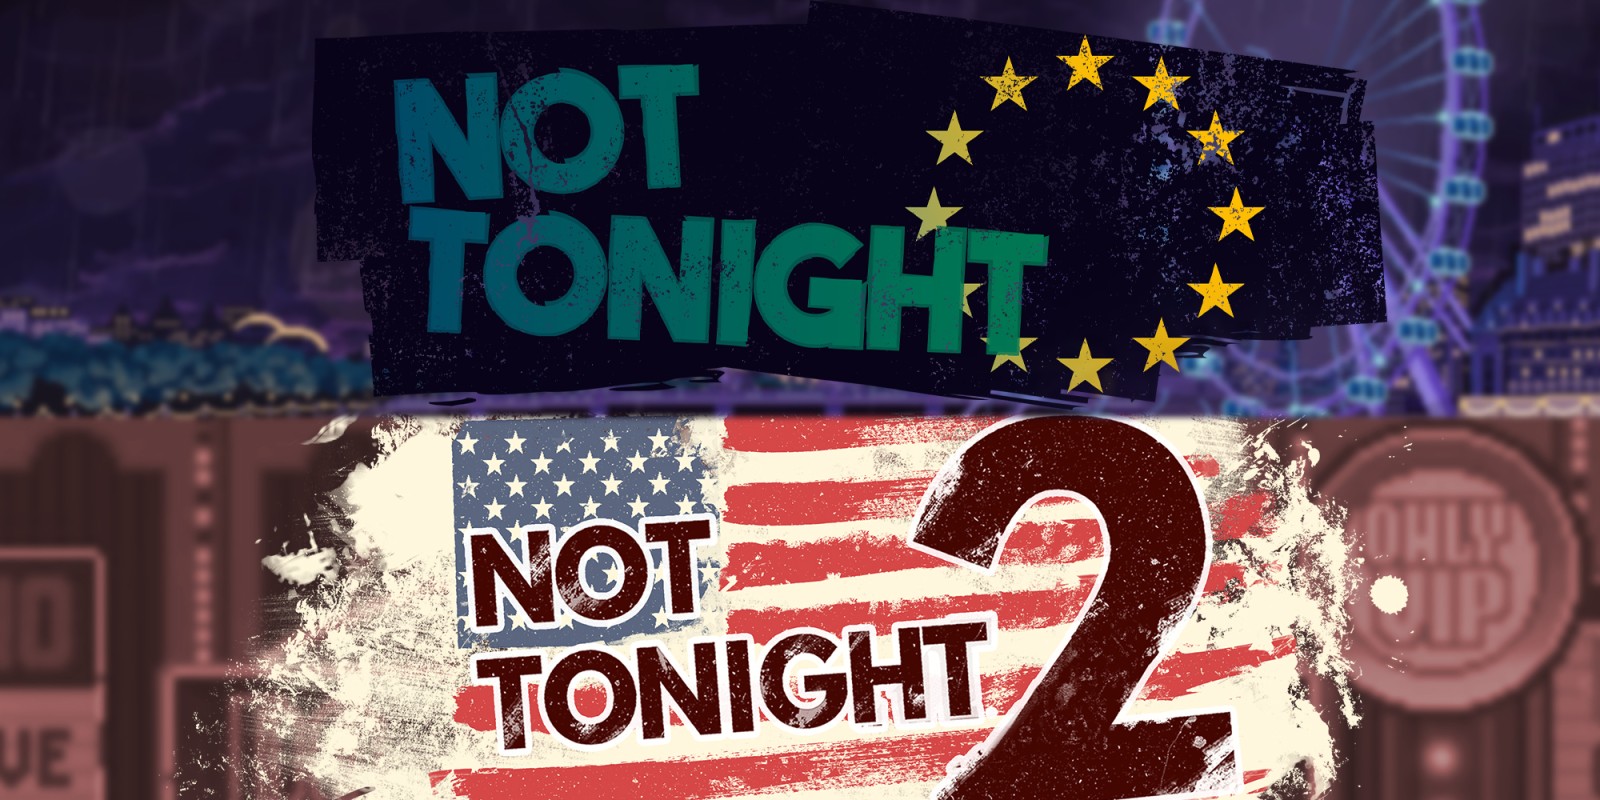 Not Tonight & Not Tonight 2